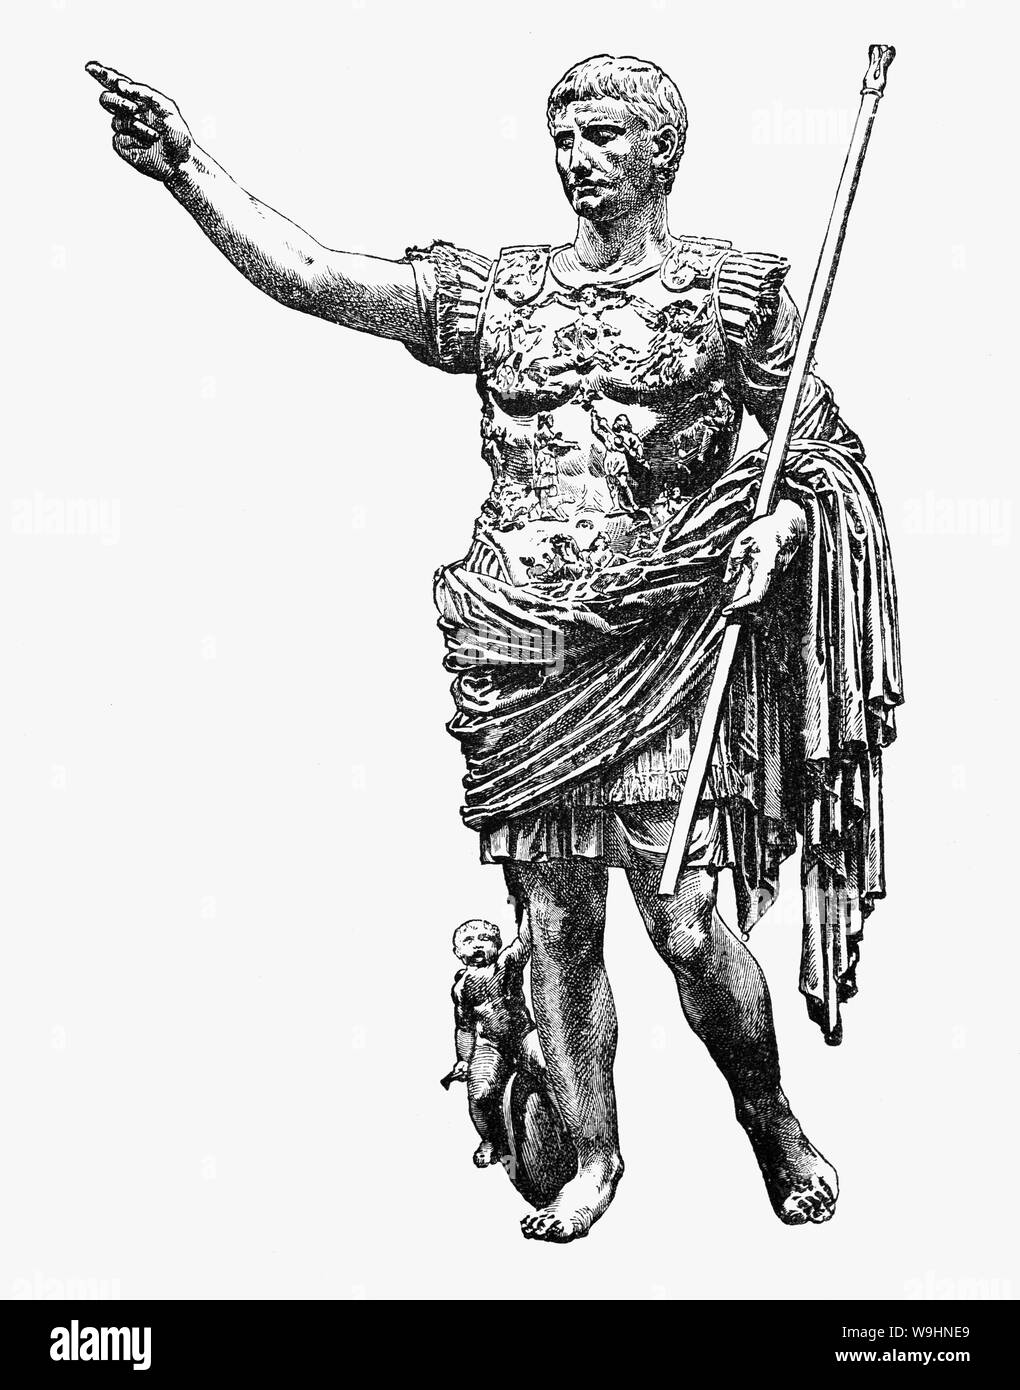 Auguste (63 BC - AD 14), homme d'état Romain et chef militaire a été le premier empereur de l'Empire romain, régnant à partir de 27 av. J.-C. jusqu'à sa mort en l'an 14. Son statut en tant que fondateur de la Roman Principate états un héritage durable comme l'un des plus efficaces et des dirigeants controversés de l'histoire de l'ouverture d'une ère de paix relative connue sous le nom de Pax Romana a duré plus de deux siècles, en dépit des guerres continues de l'expansion impériale sur les frontières de l'Empire et les années de la guerre civile connue sous le nom de "Année des quatre empereurs' sur la succession impériale. Banque D'Images